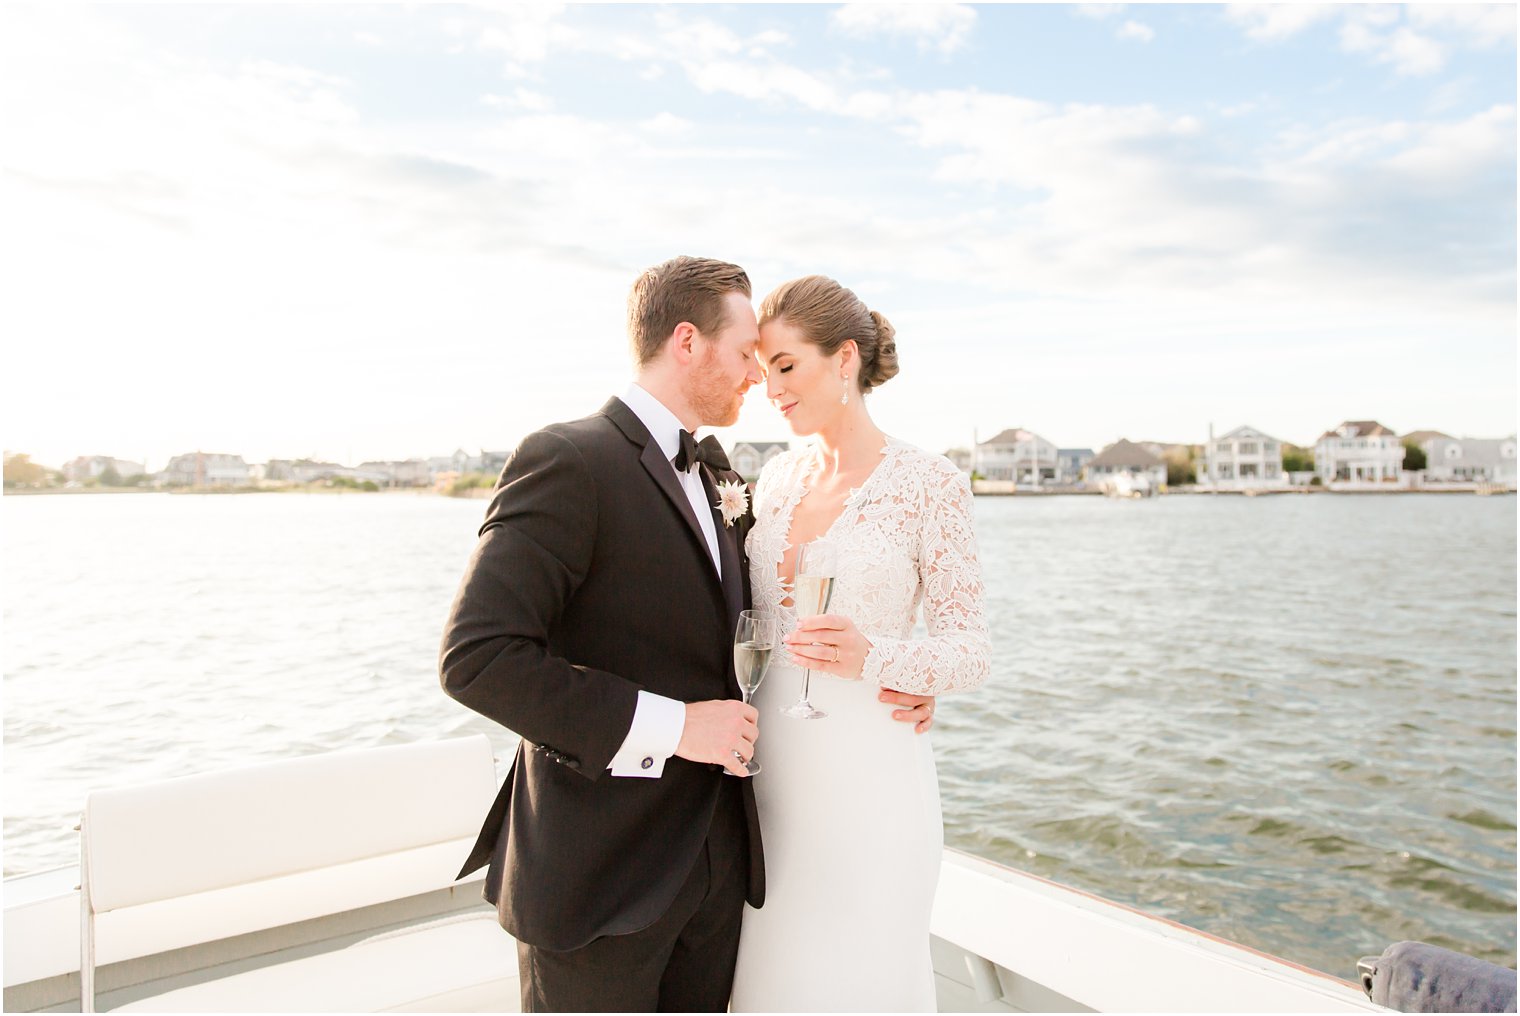 Bay Head Yacht Club Wedding Photos on a boat